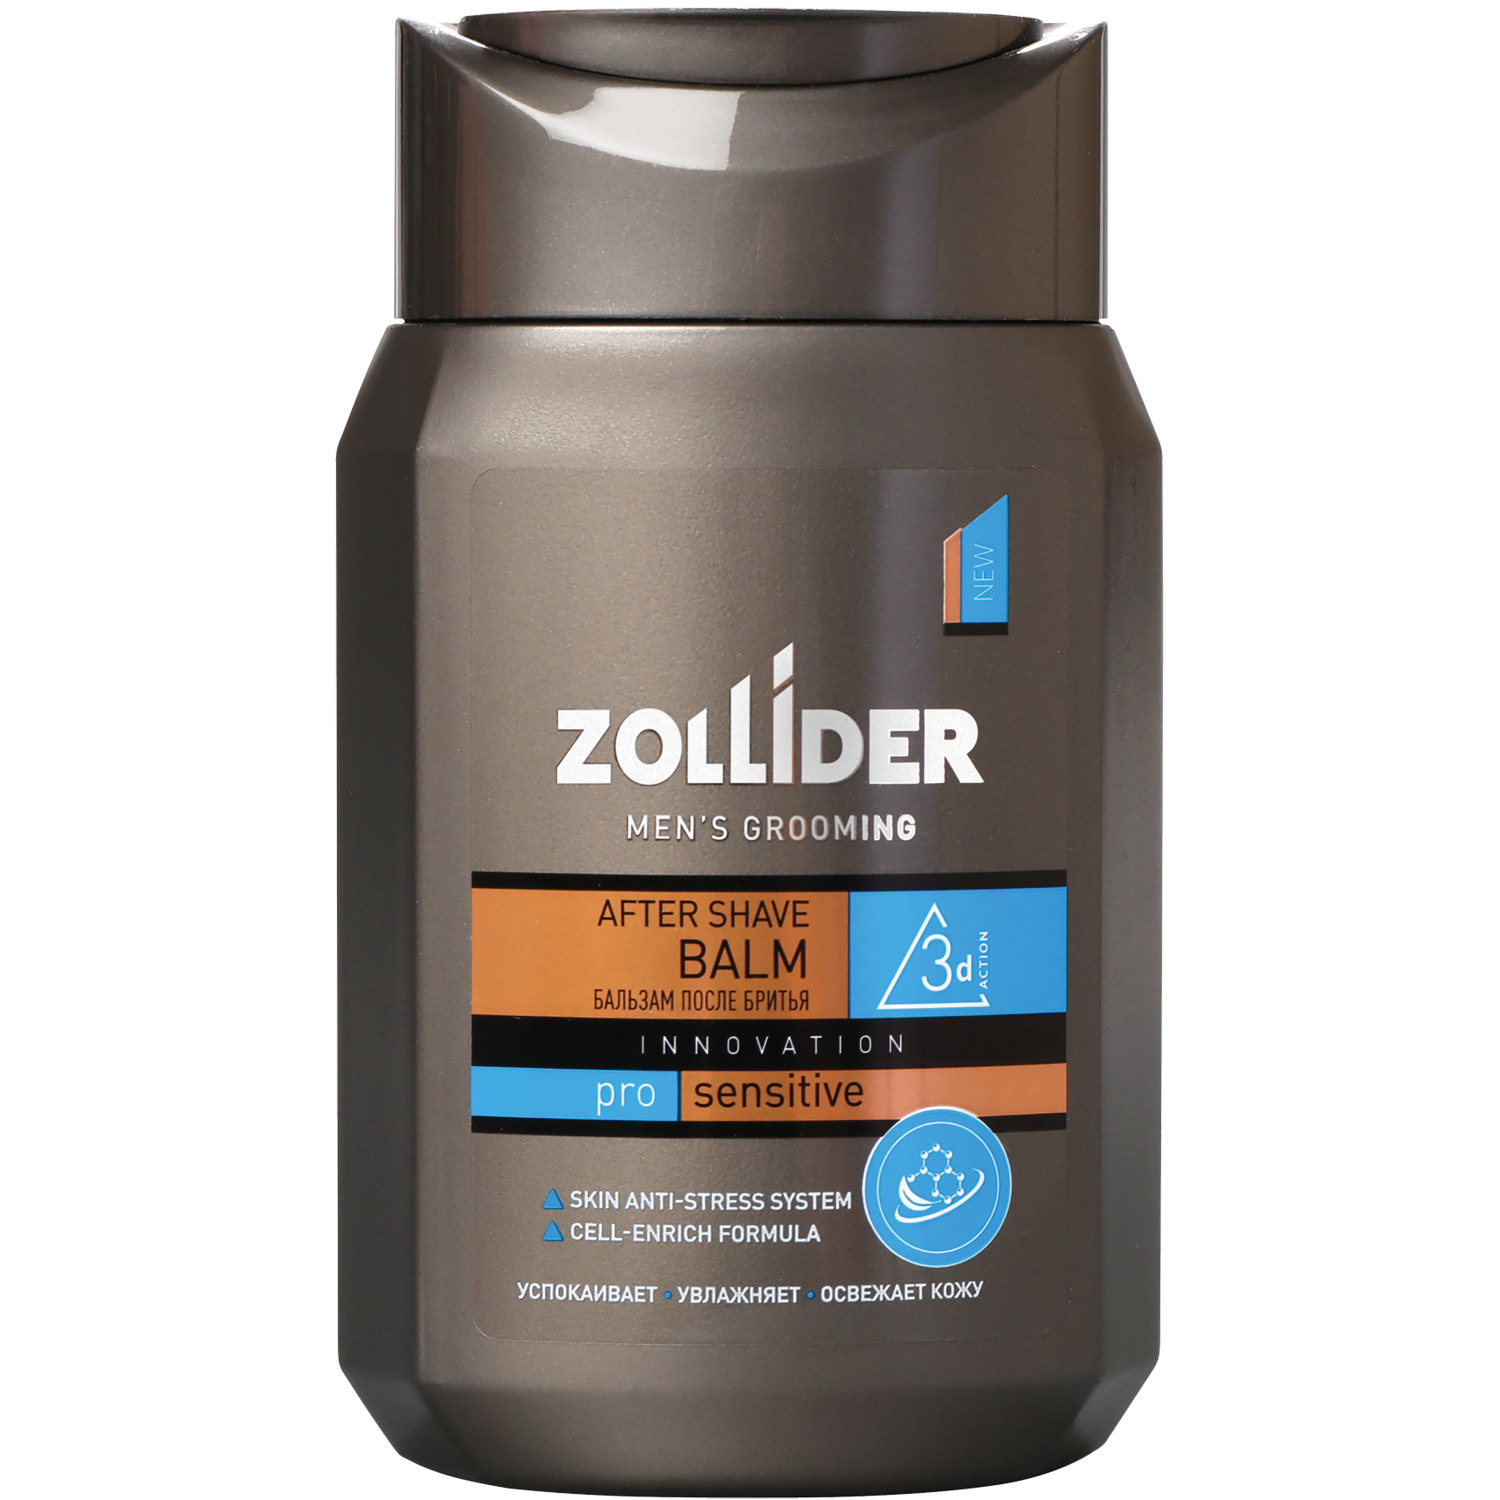 Бальзам после бритья Zollider Pro Sensitive для чувствительной кожи 150 мл